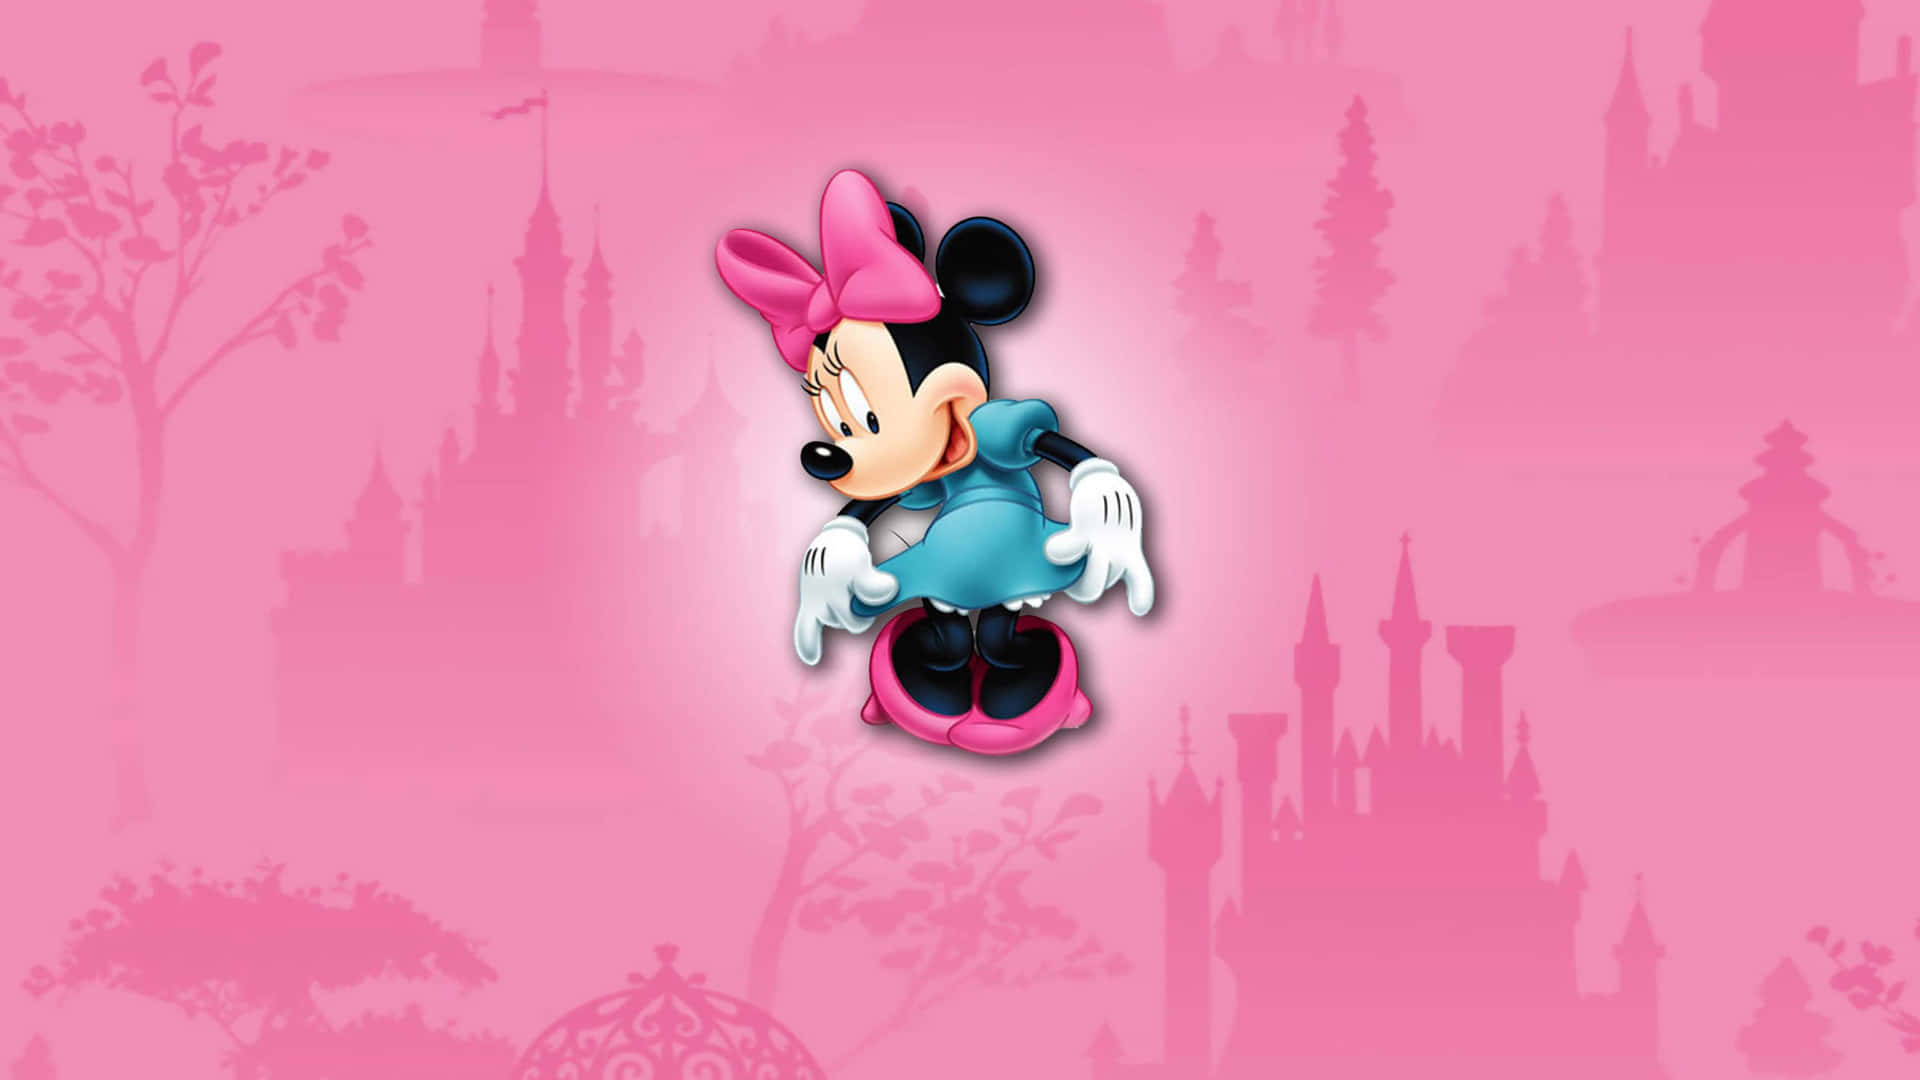 Ikoniske Minnie Mus iført et blødt pink tøj. Wallpaper